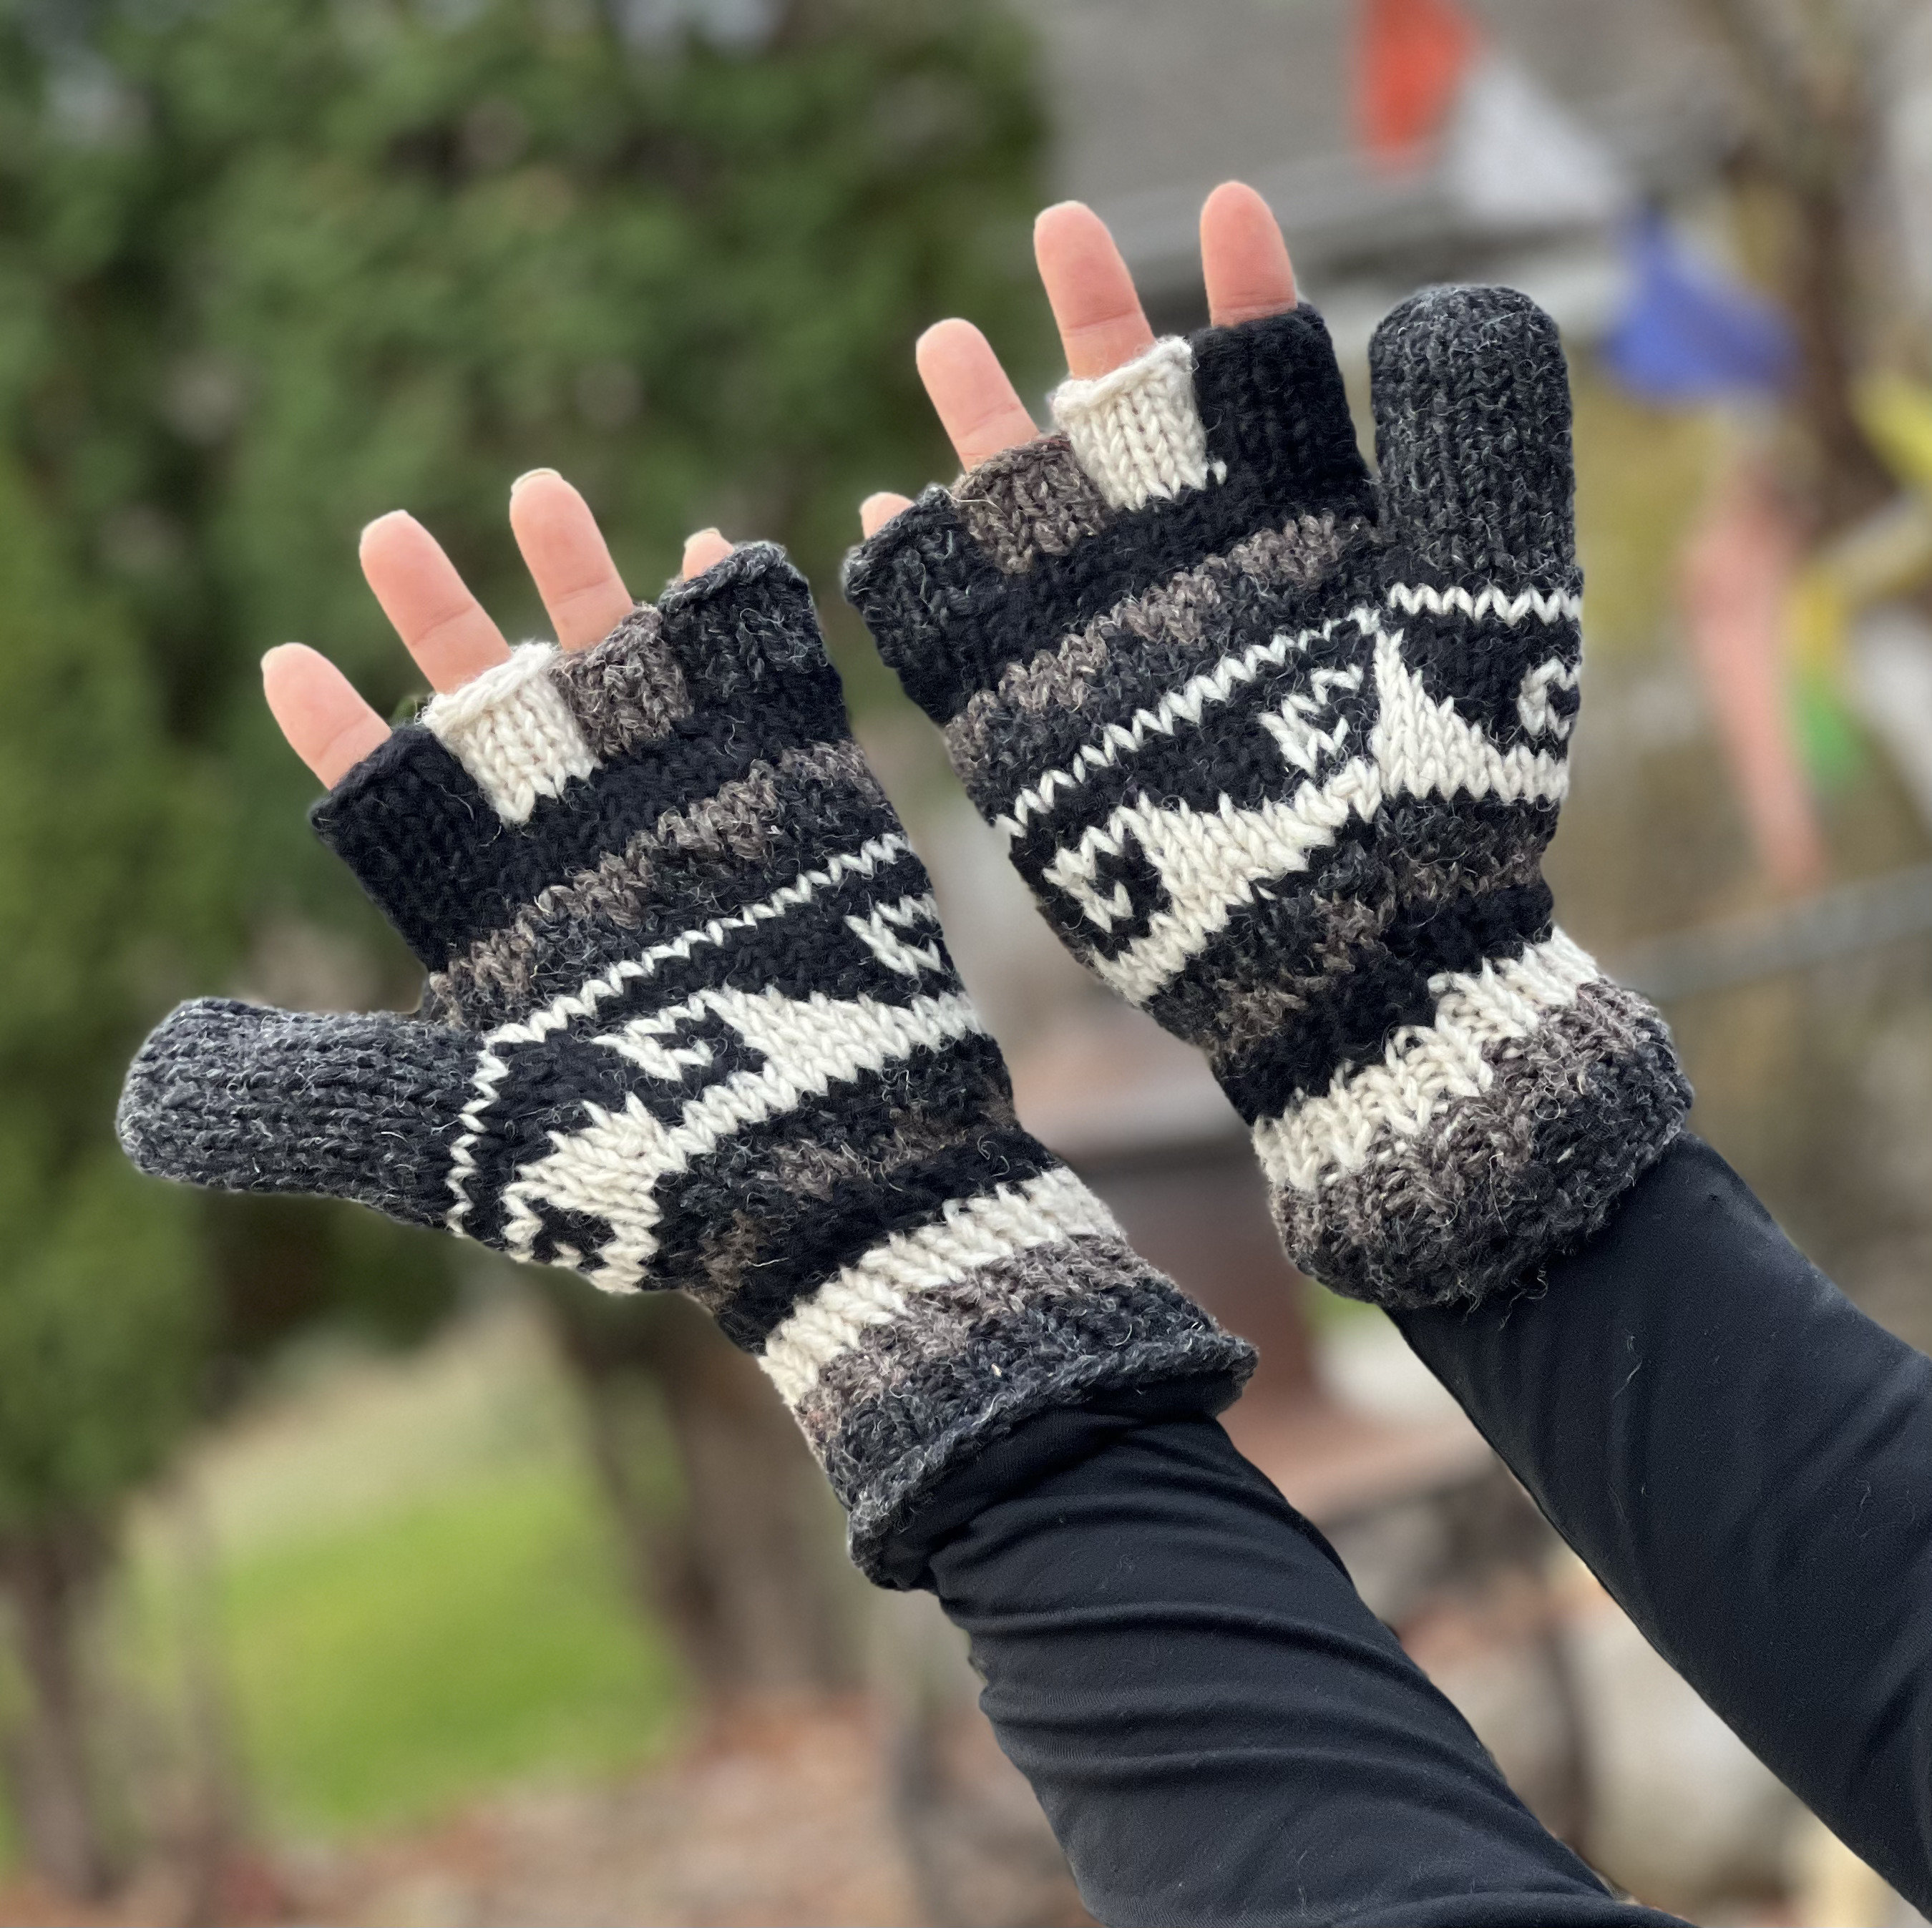 Gants d'hiver pour homme, doublure en polaire, tricot, gants à doigts  tricotés, gants chauds pour homme et homme, gants chauds en polaire stretch